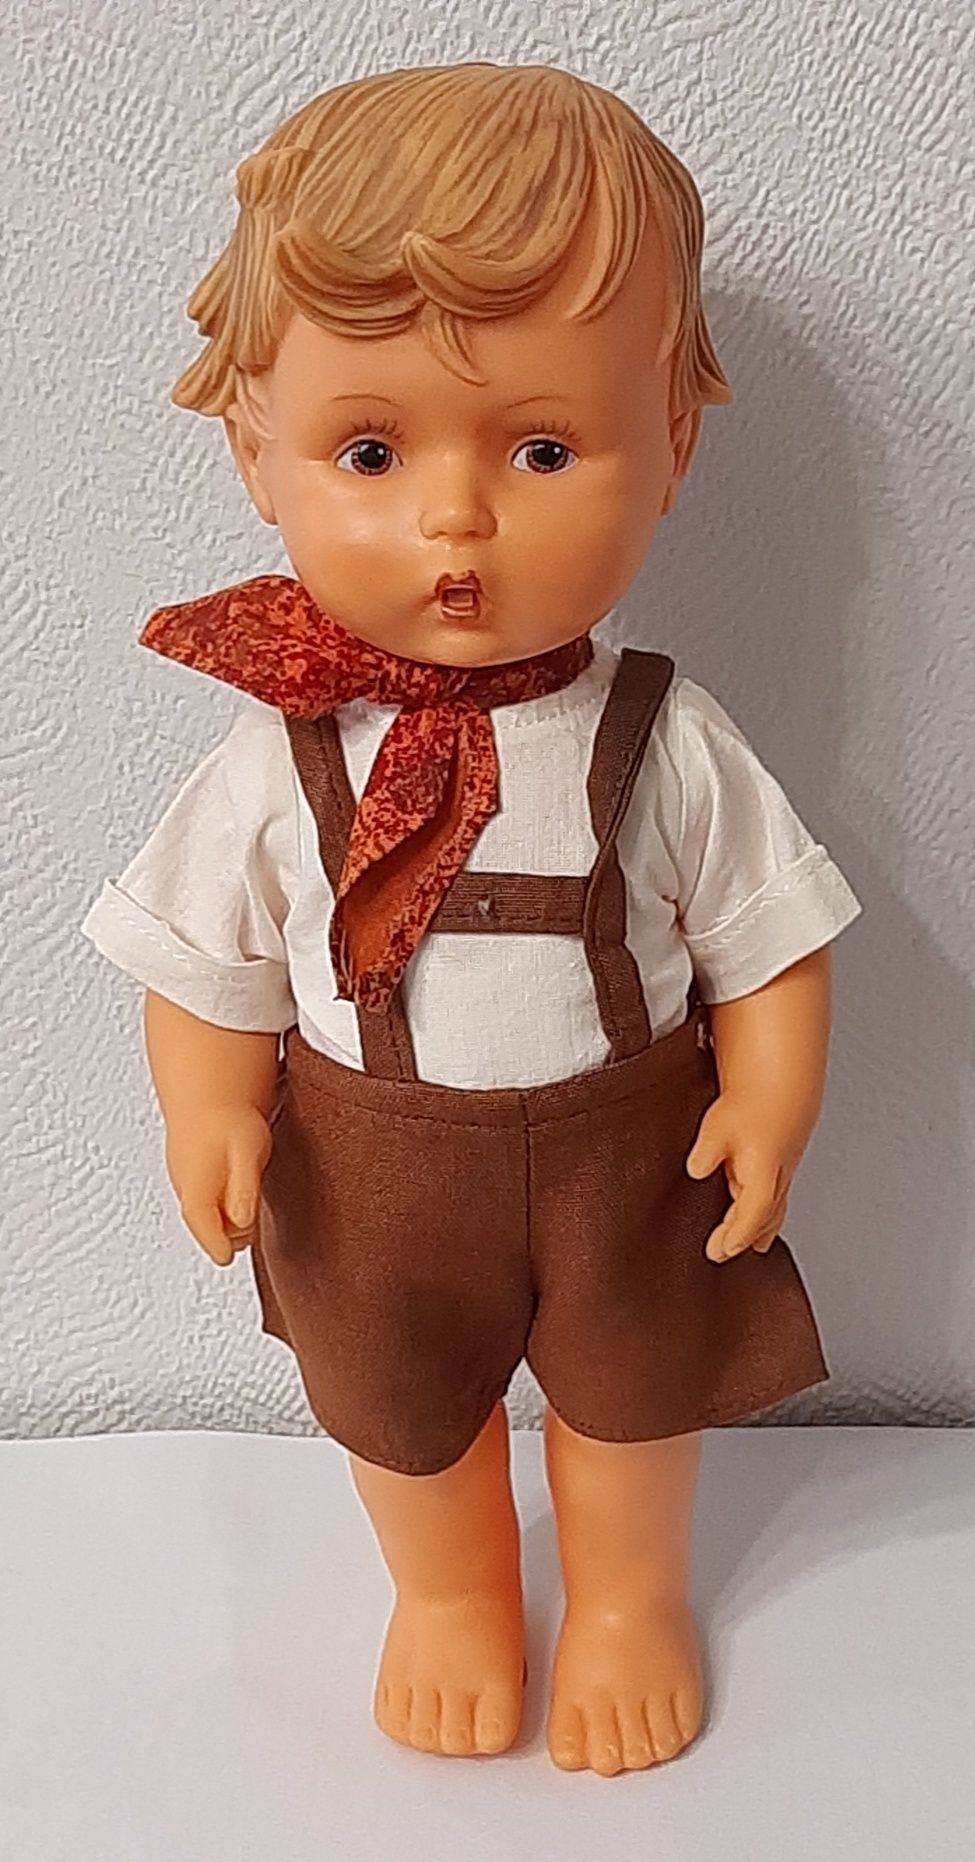 Коллекционная винтажная немецкая кукла Hummel Gloebel 1950 год, 28 см